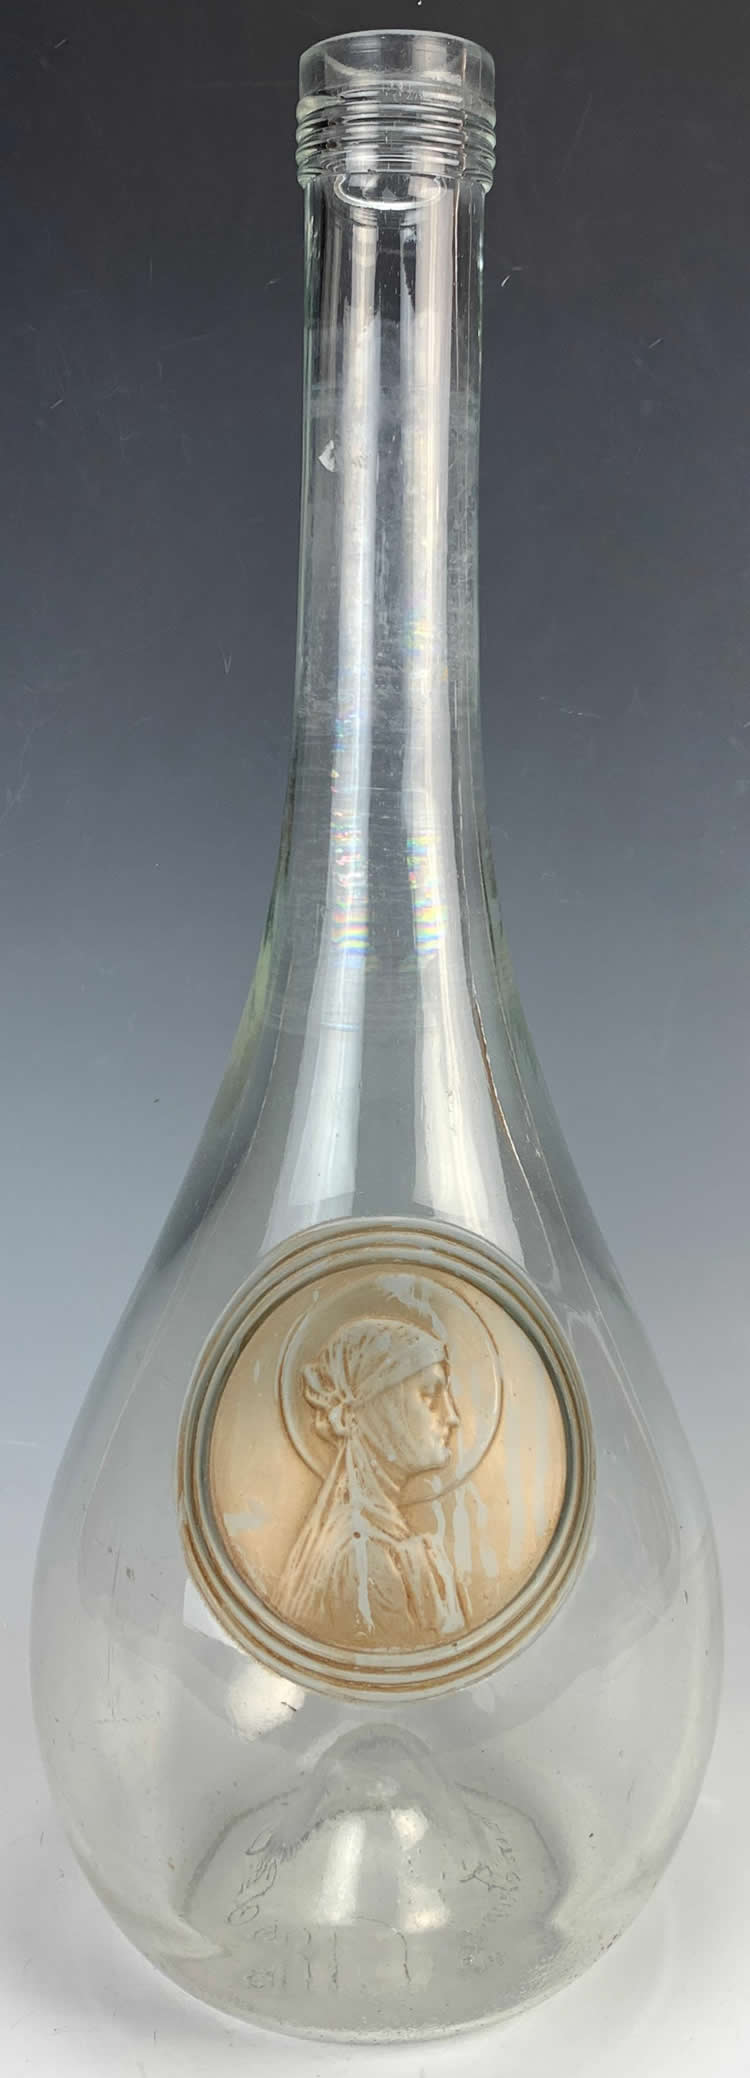 R. Lalique Clos Sainte-Odile Carafe 2 of 2